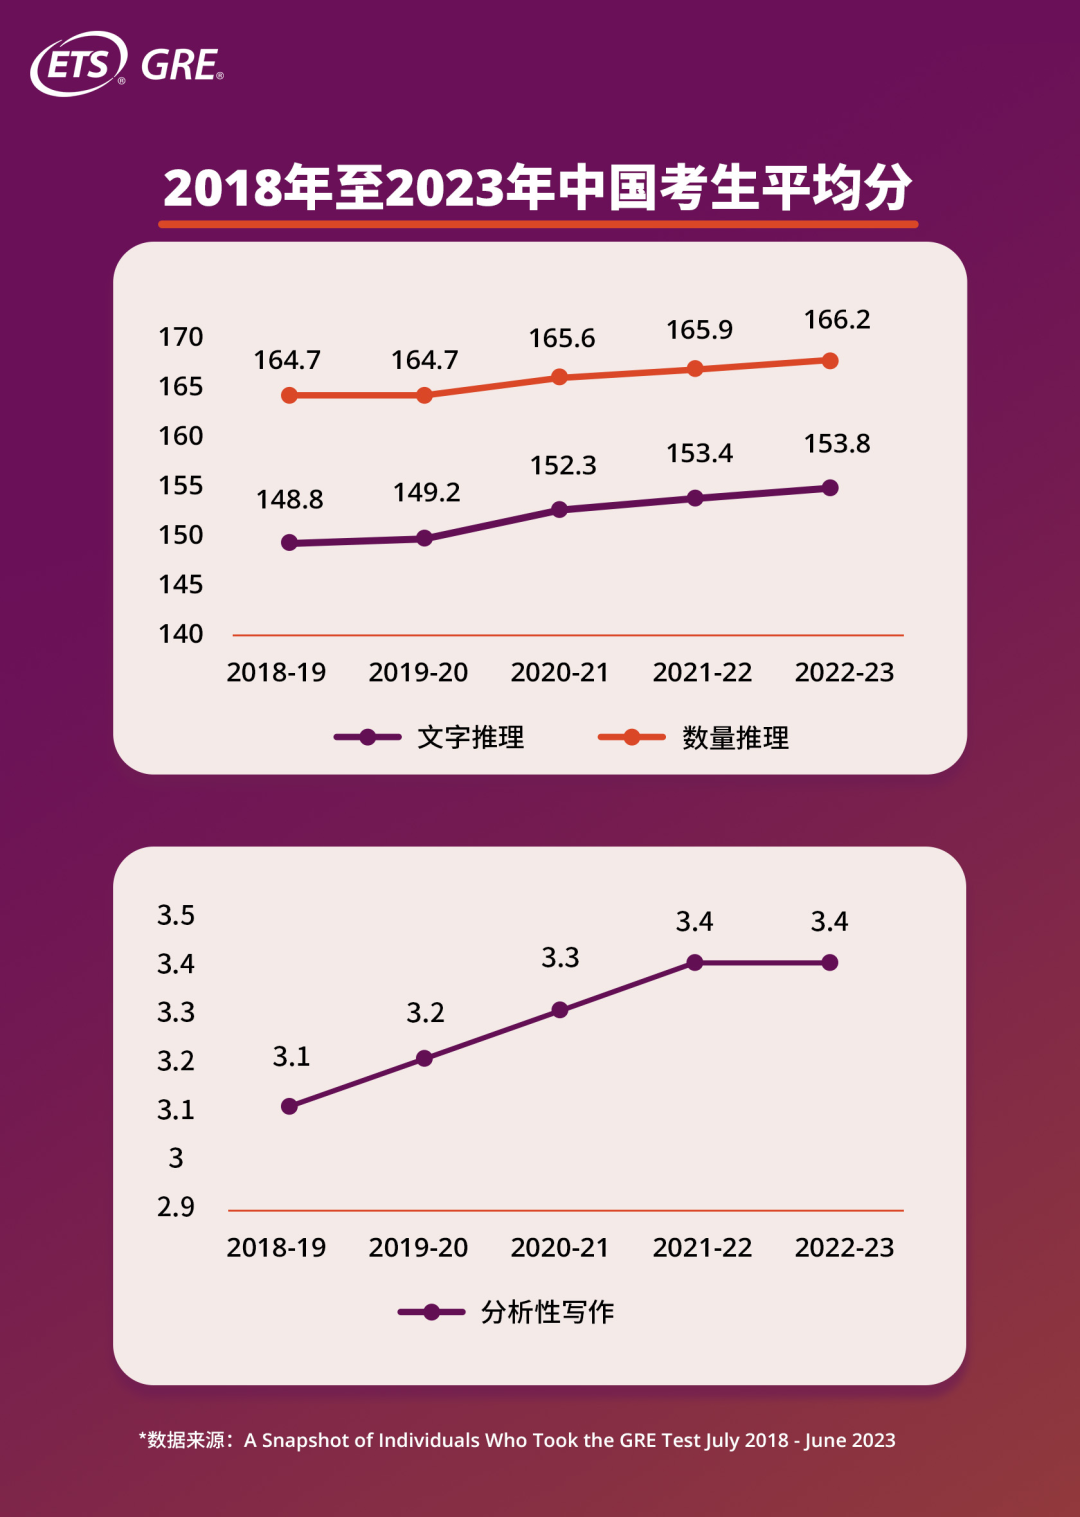 朗途留学 | GRE发布最新年度报告！中国考生成绩再度上升！附考生「期望专业」及GRE备考攻略！